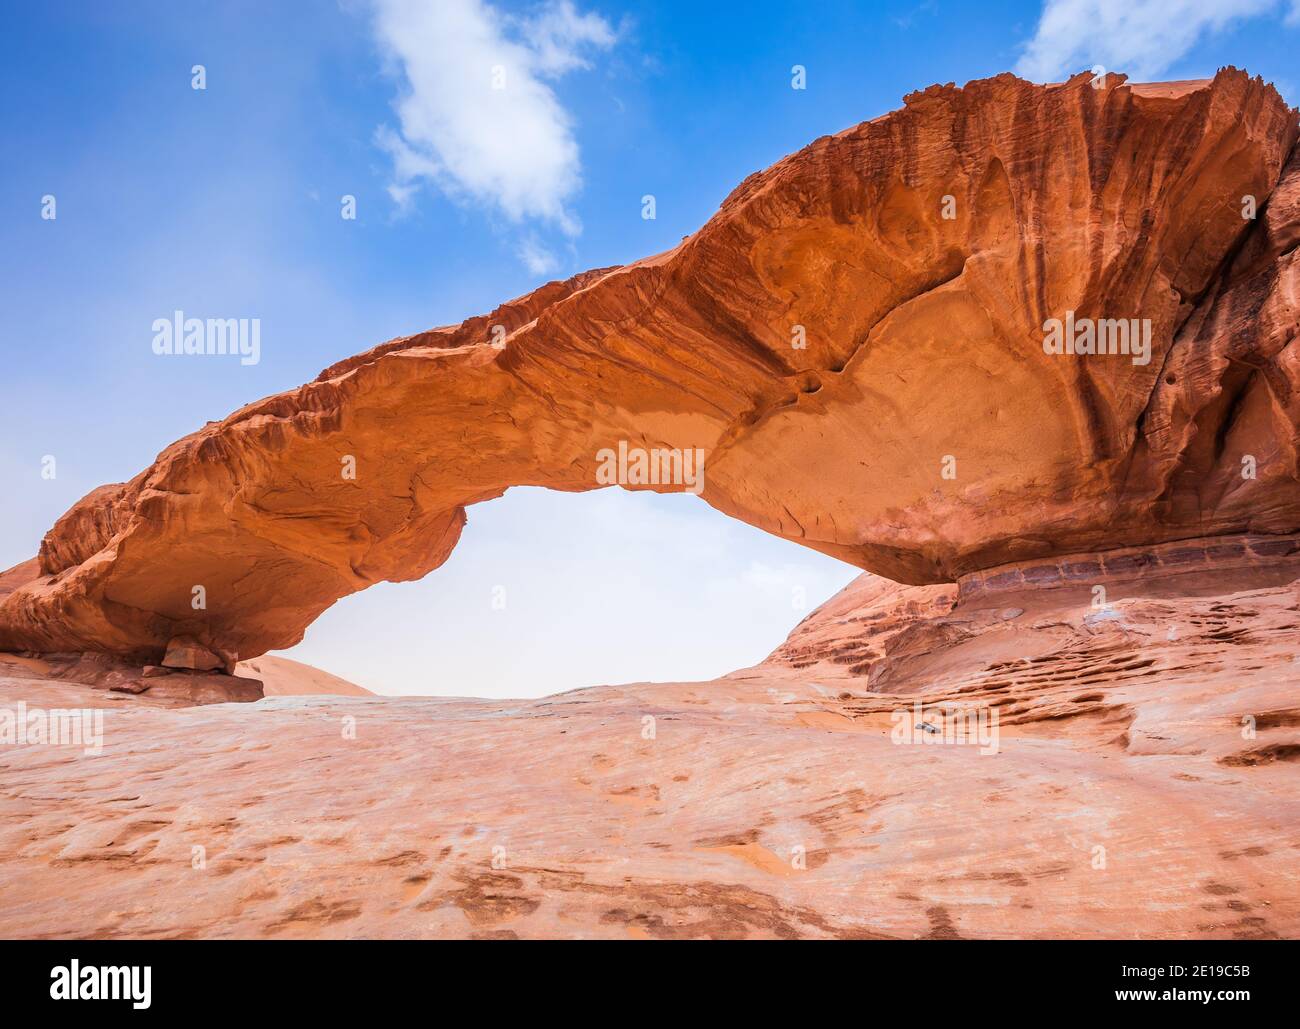 Desierto de Wadi Rum, Jordania. El puente de roca de Kharaz. Foto de stock